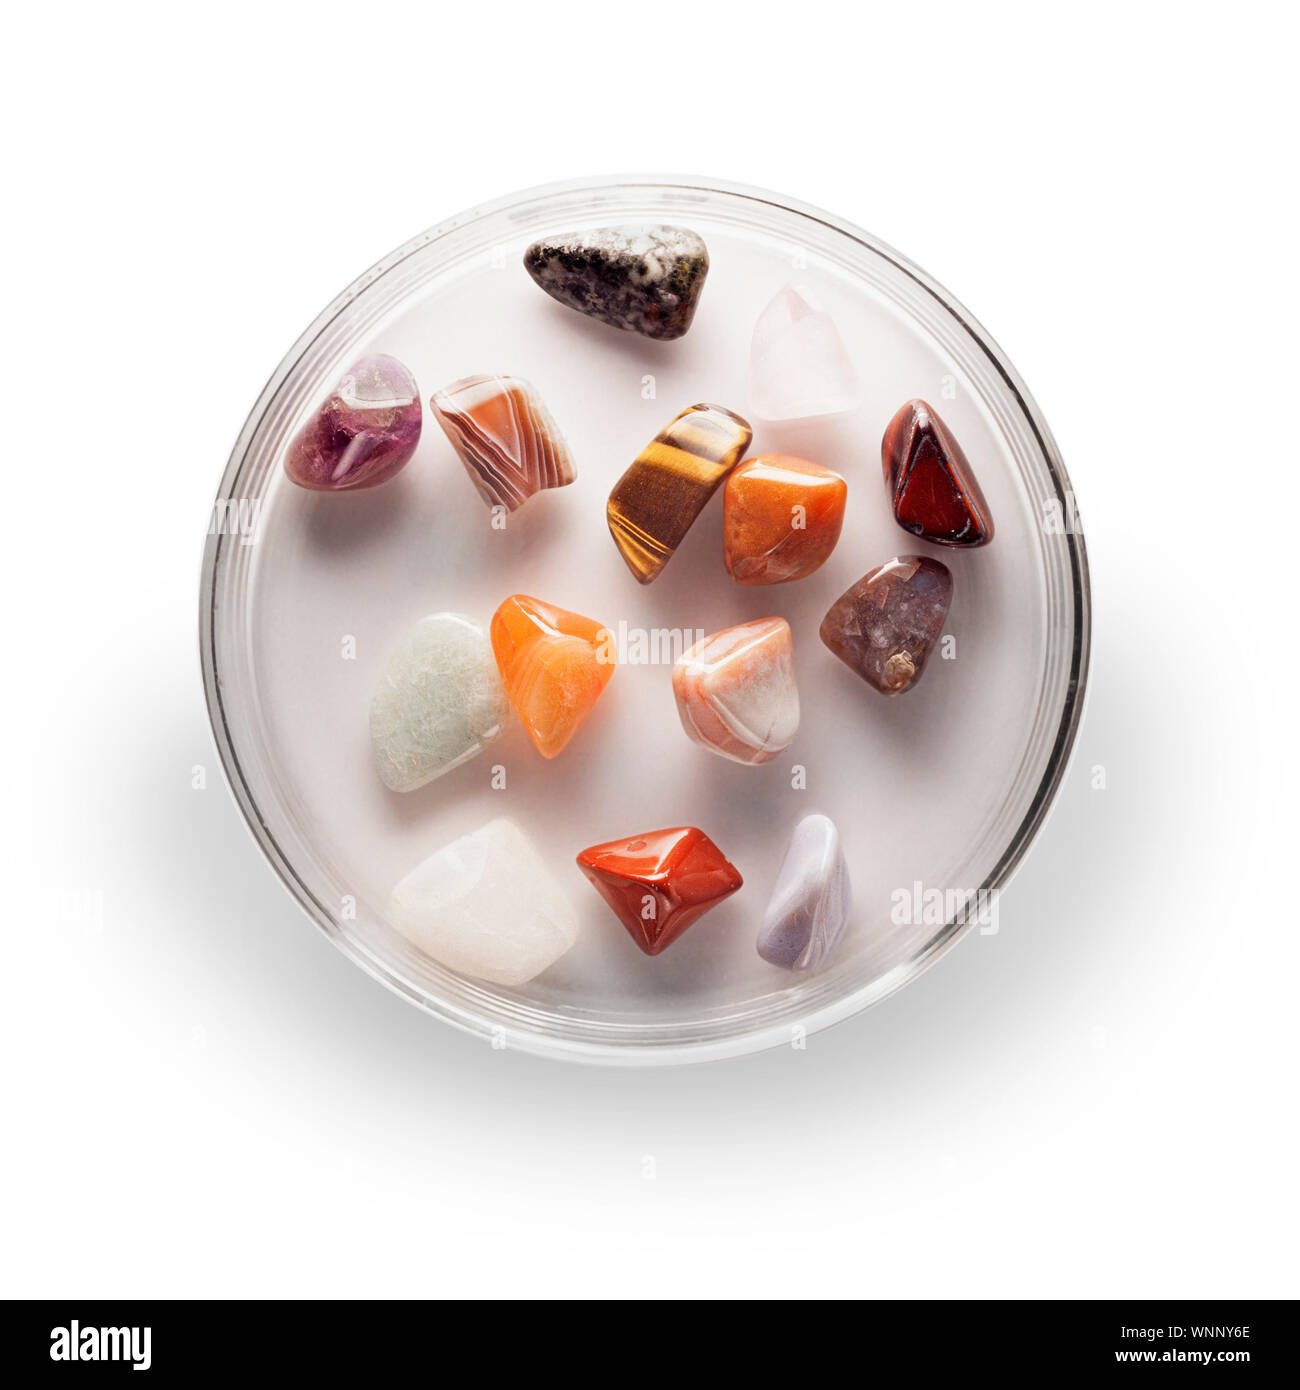 Semi precious gemstones in a petri dish, white background Stock Photo